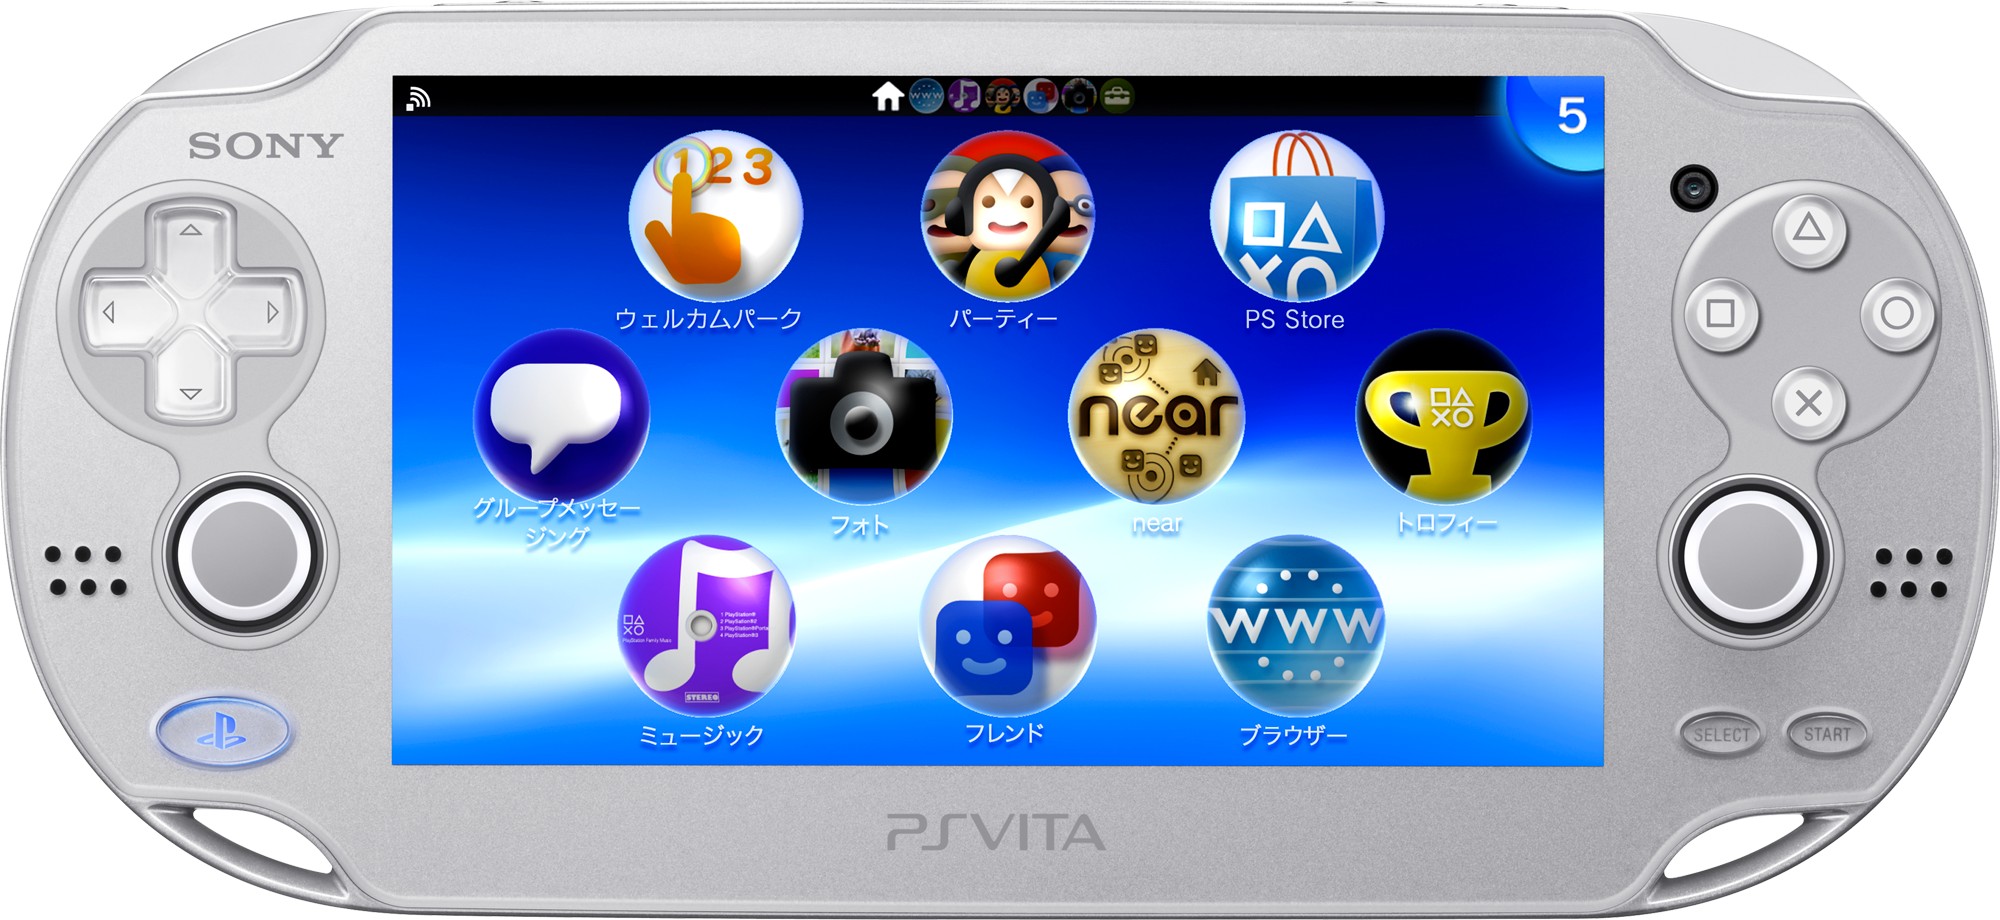 обзор и характеристики PS Vita